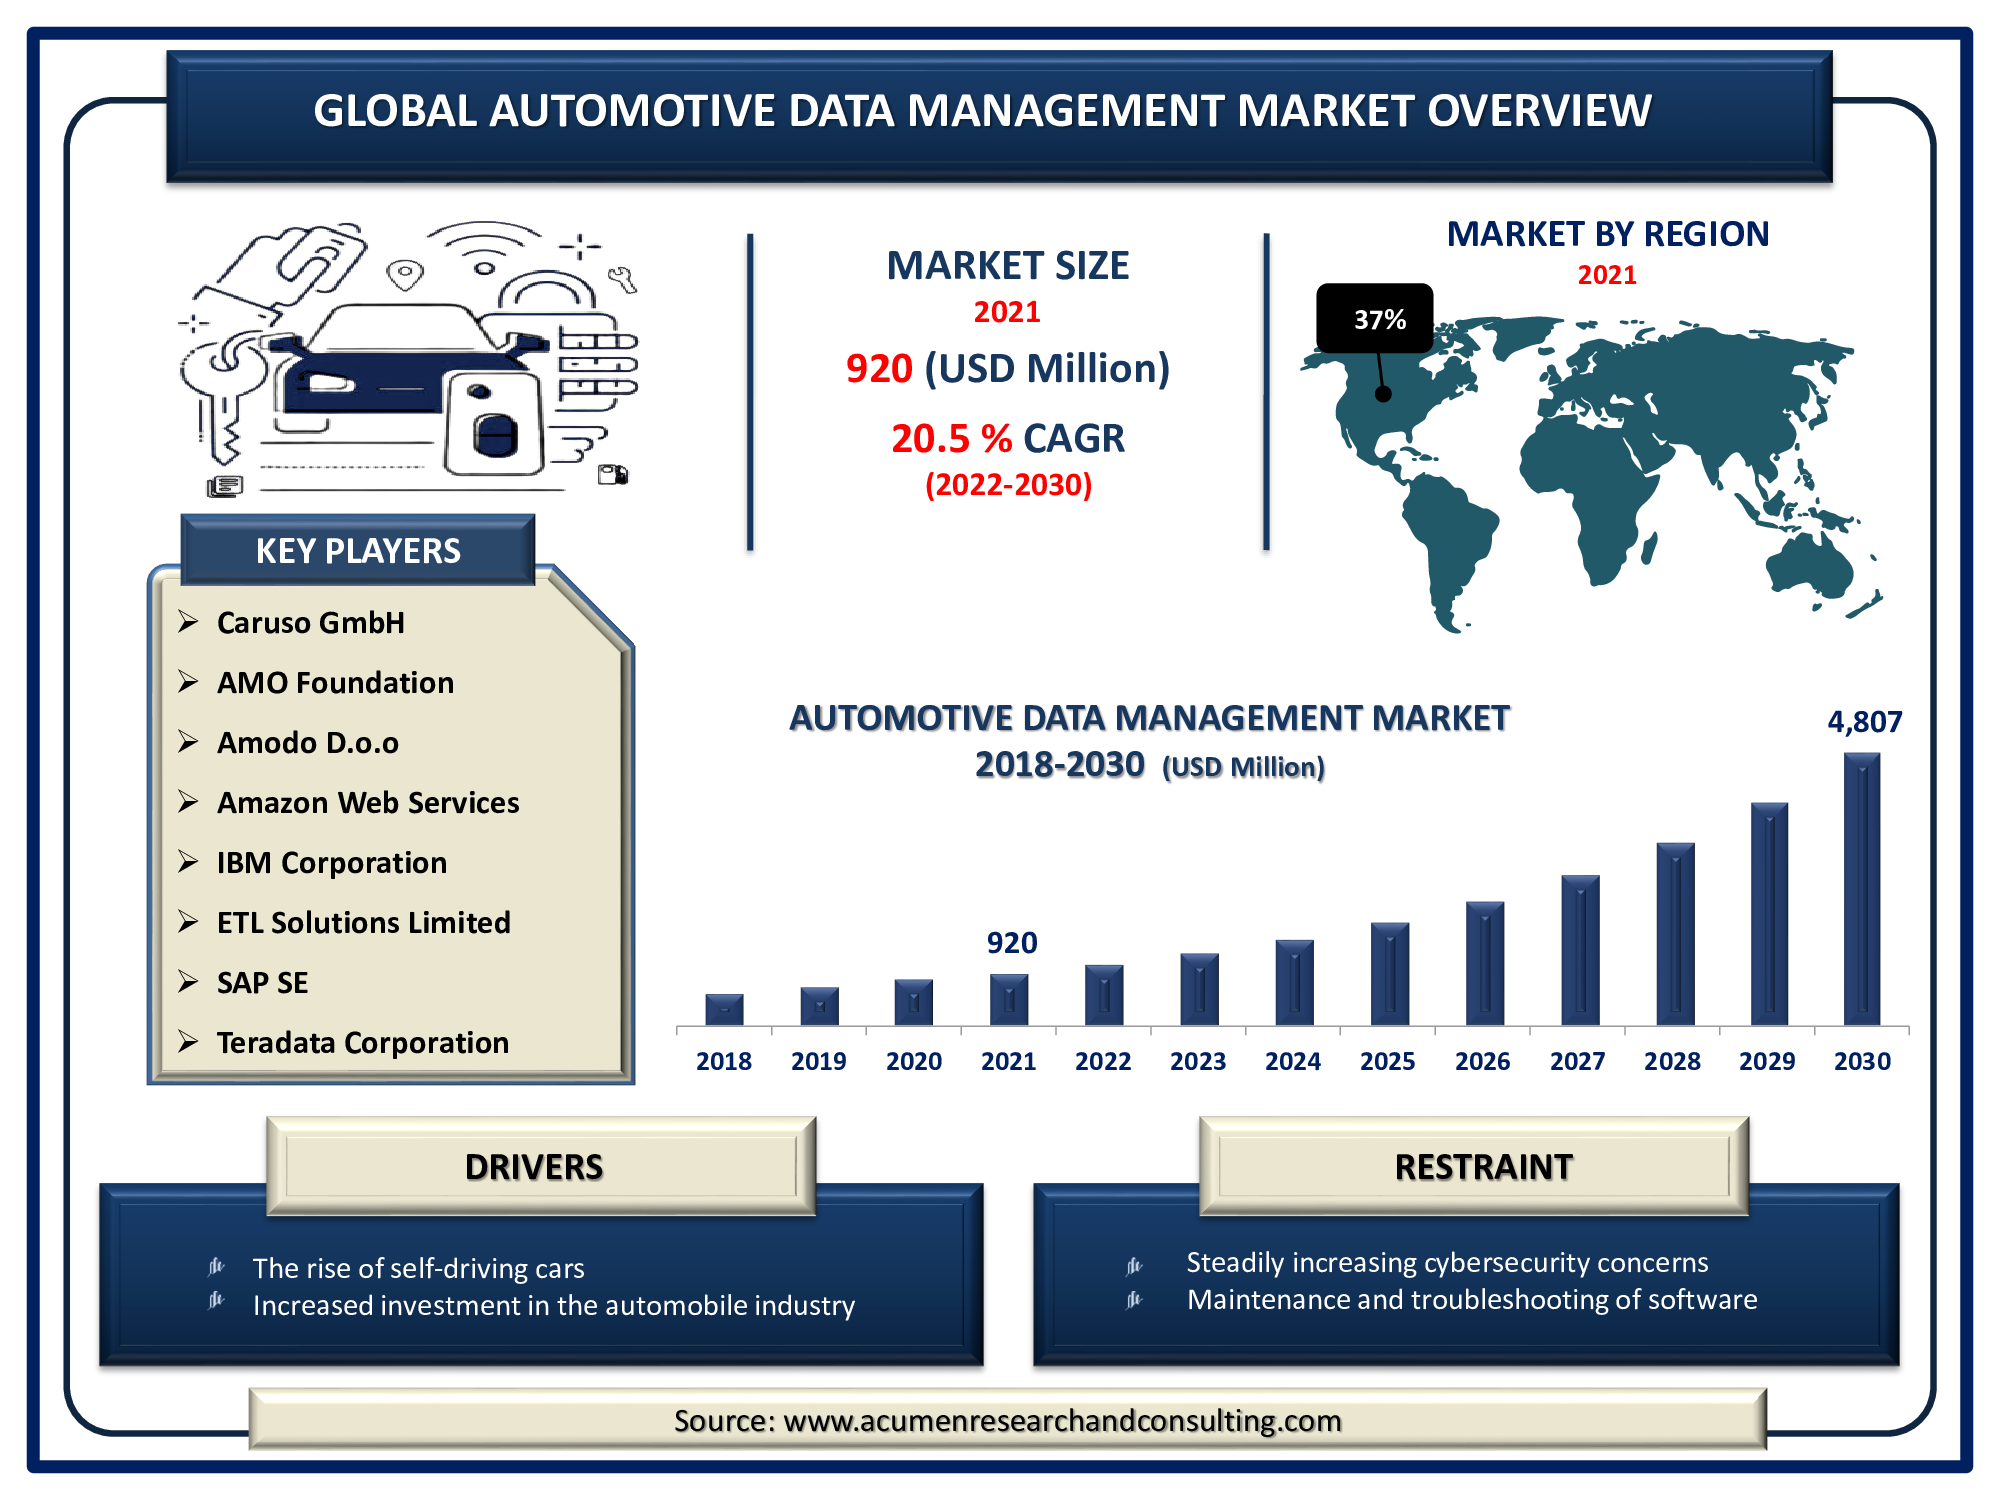 Automotive Data Management Market